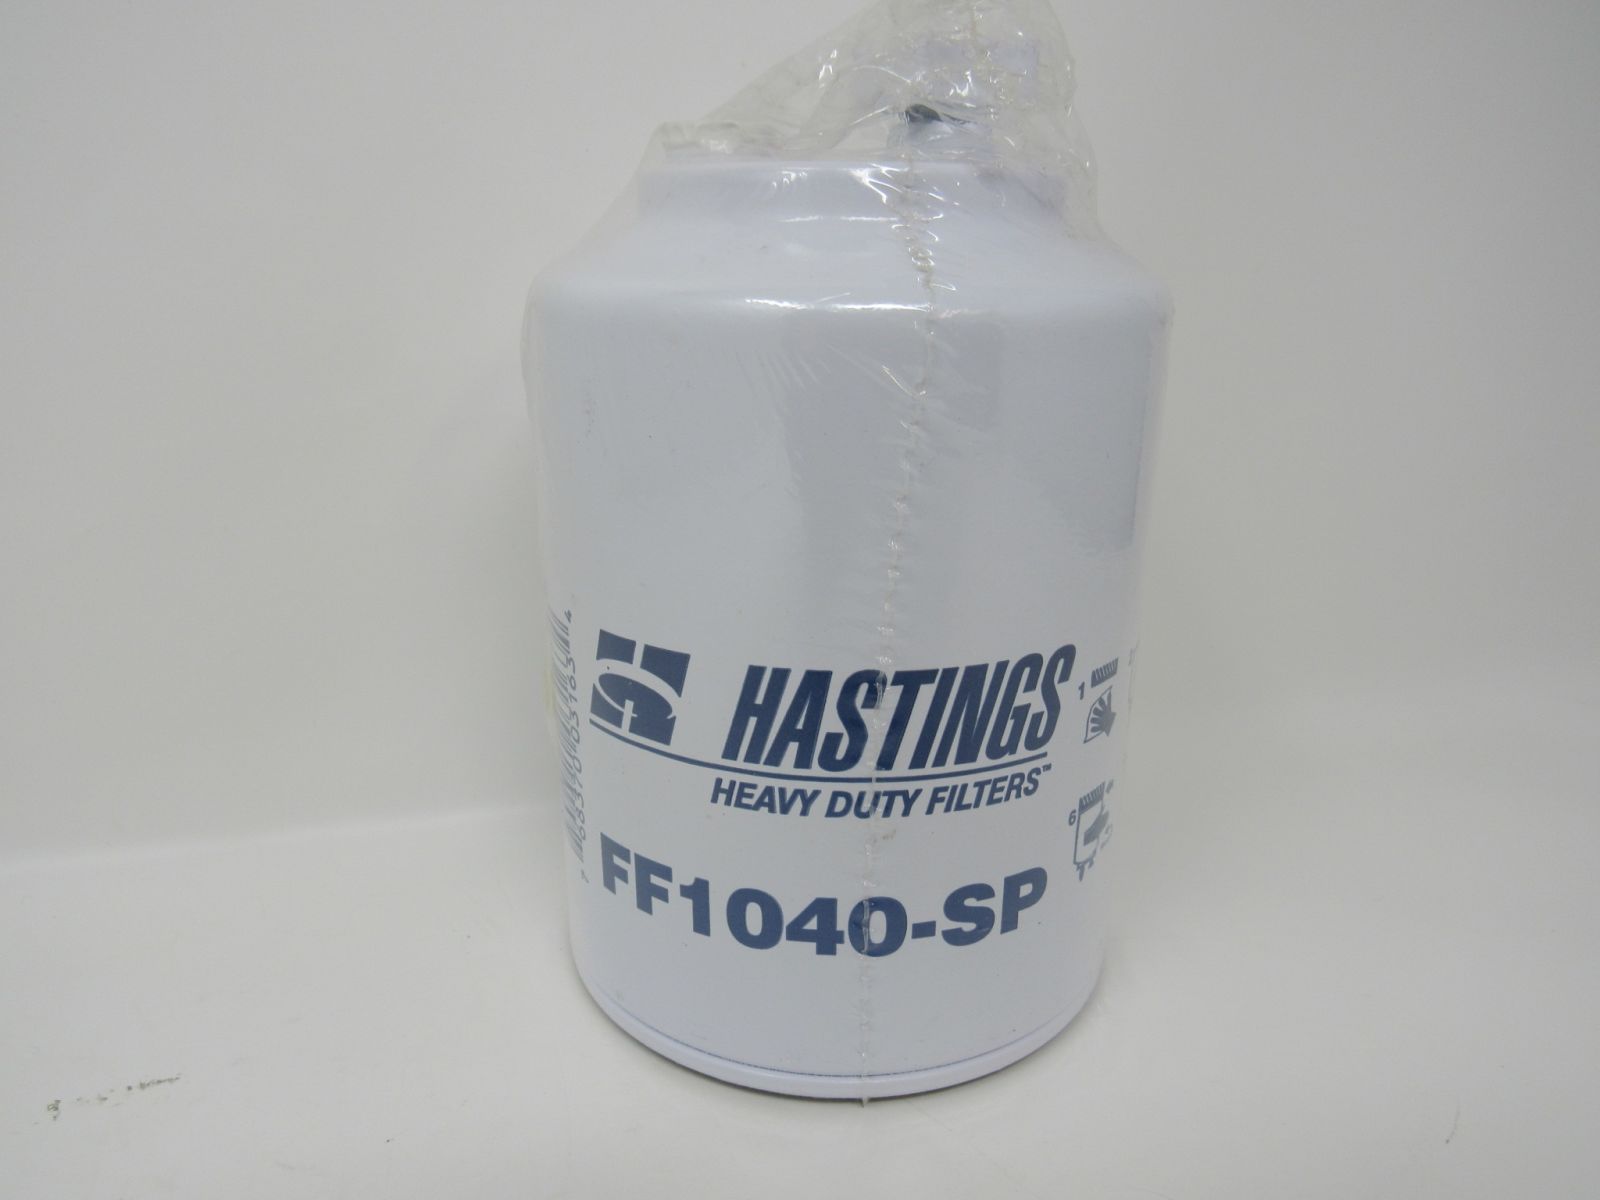 Hastings Premium Filters Fuel Water Separator Filter FF1040-SP -- New